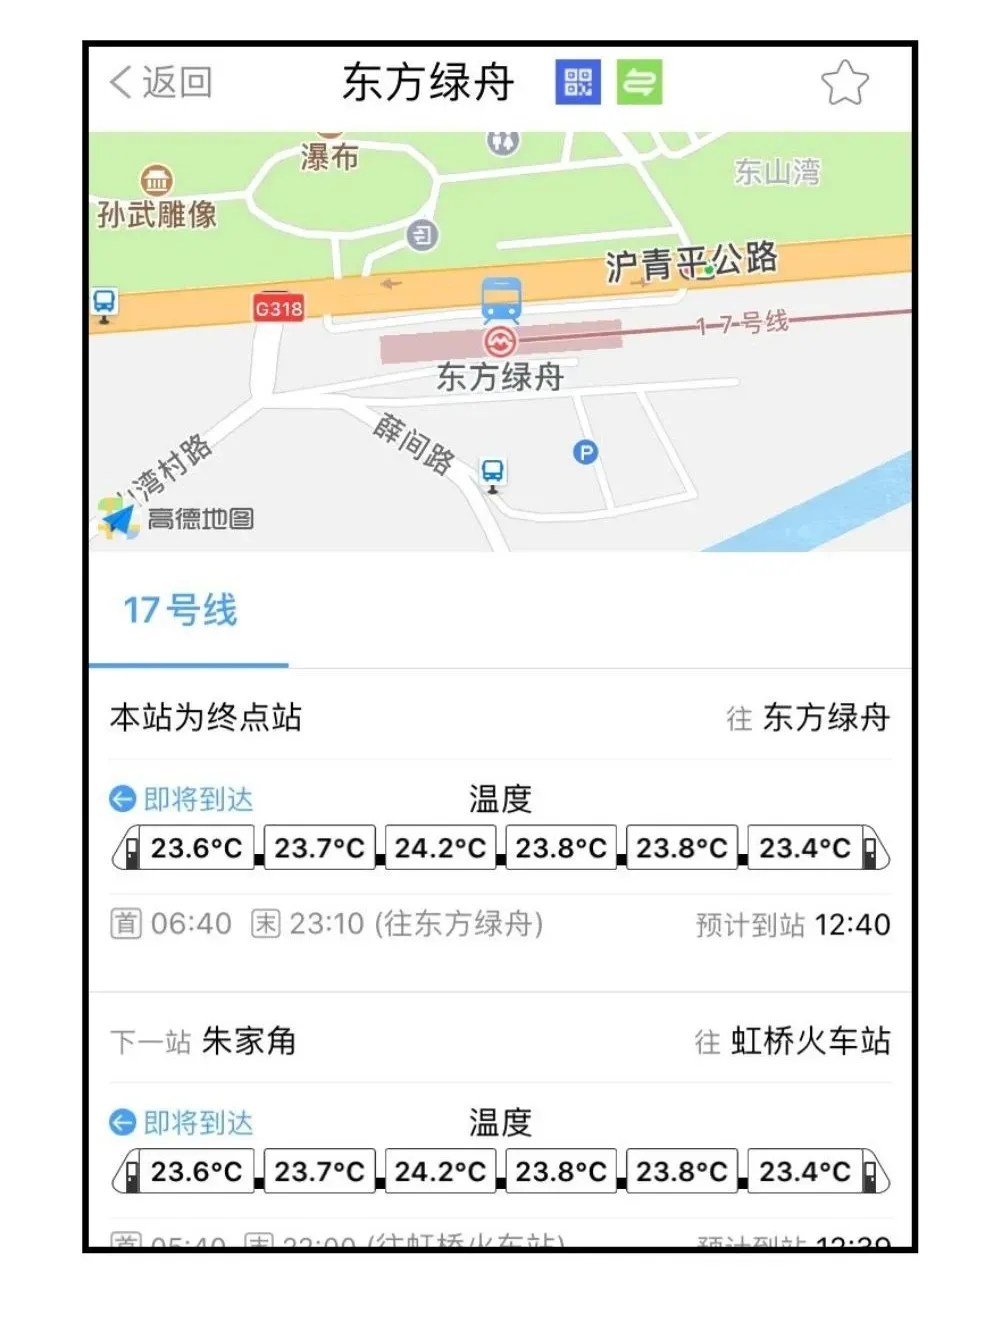 上海地铁可实时查询客流状况啦！挤不挤、热不热，手机一刷就知道